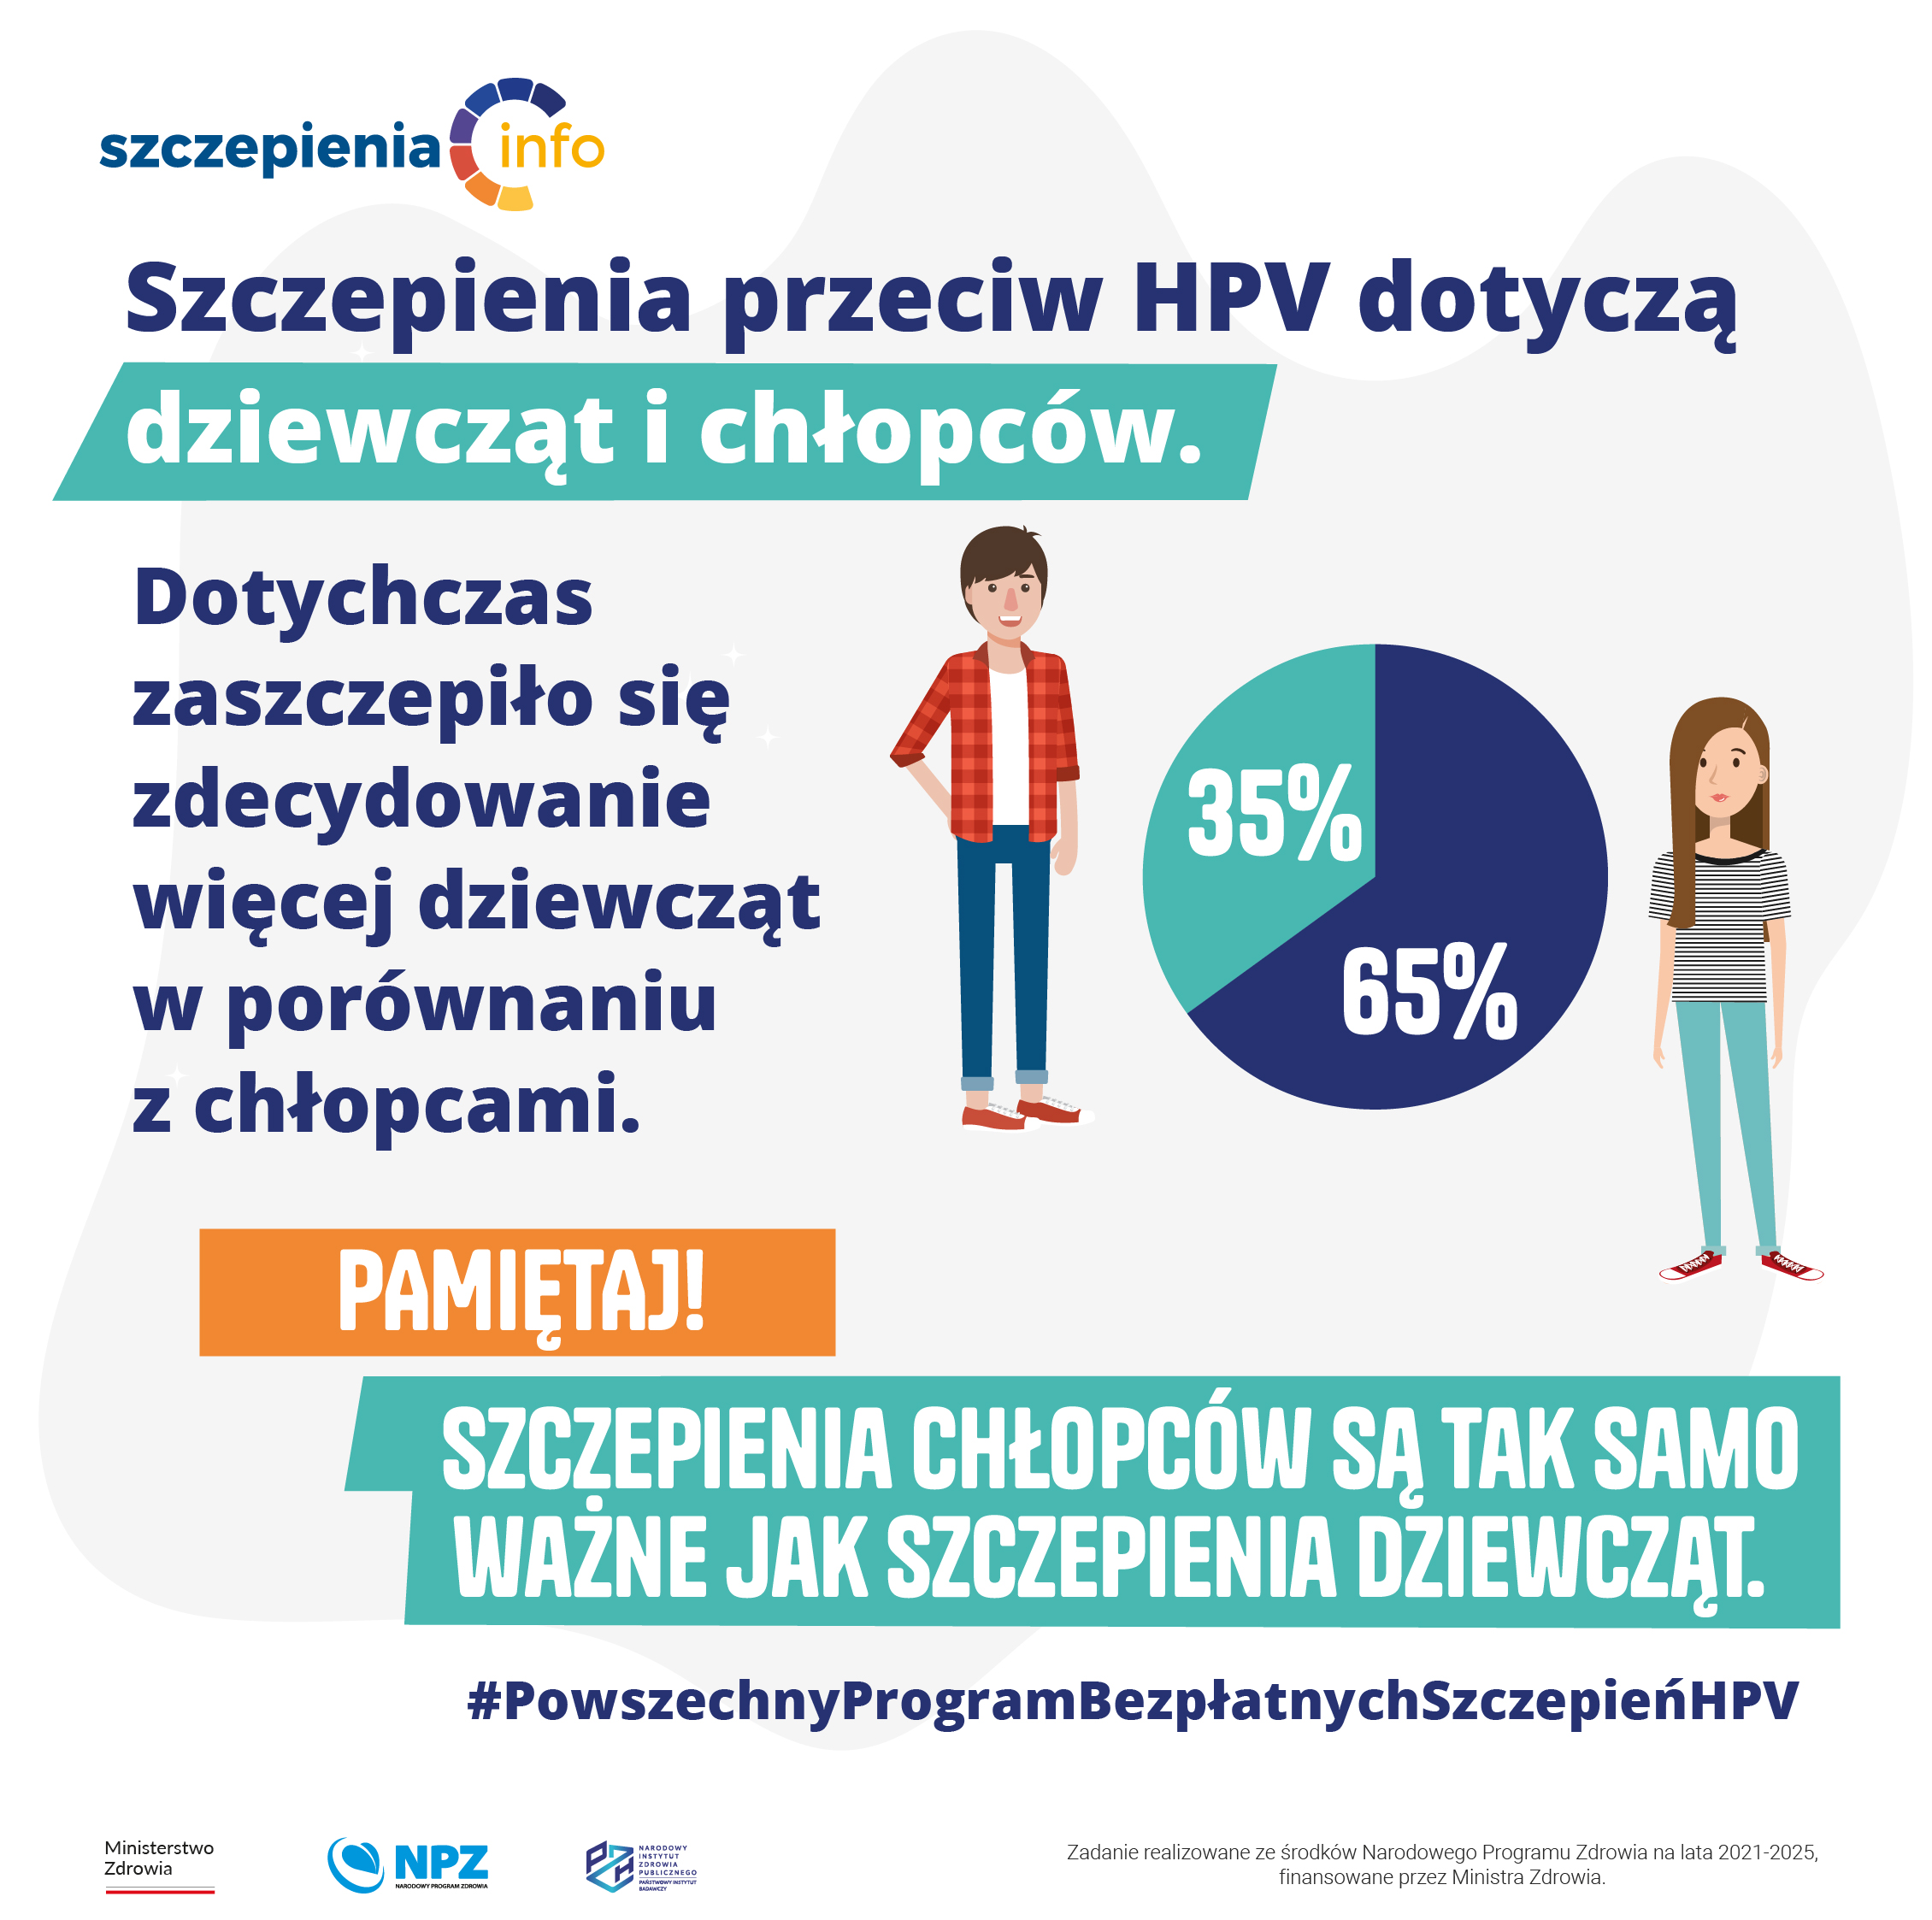 Program szczepień HPV